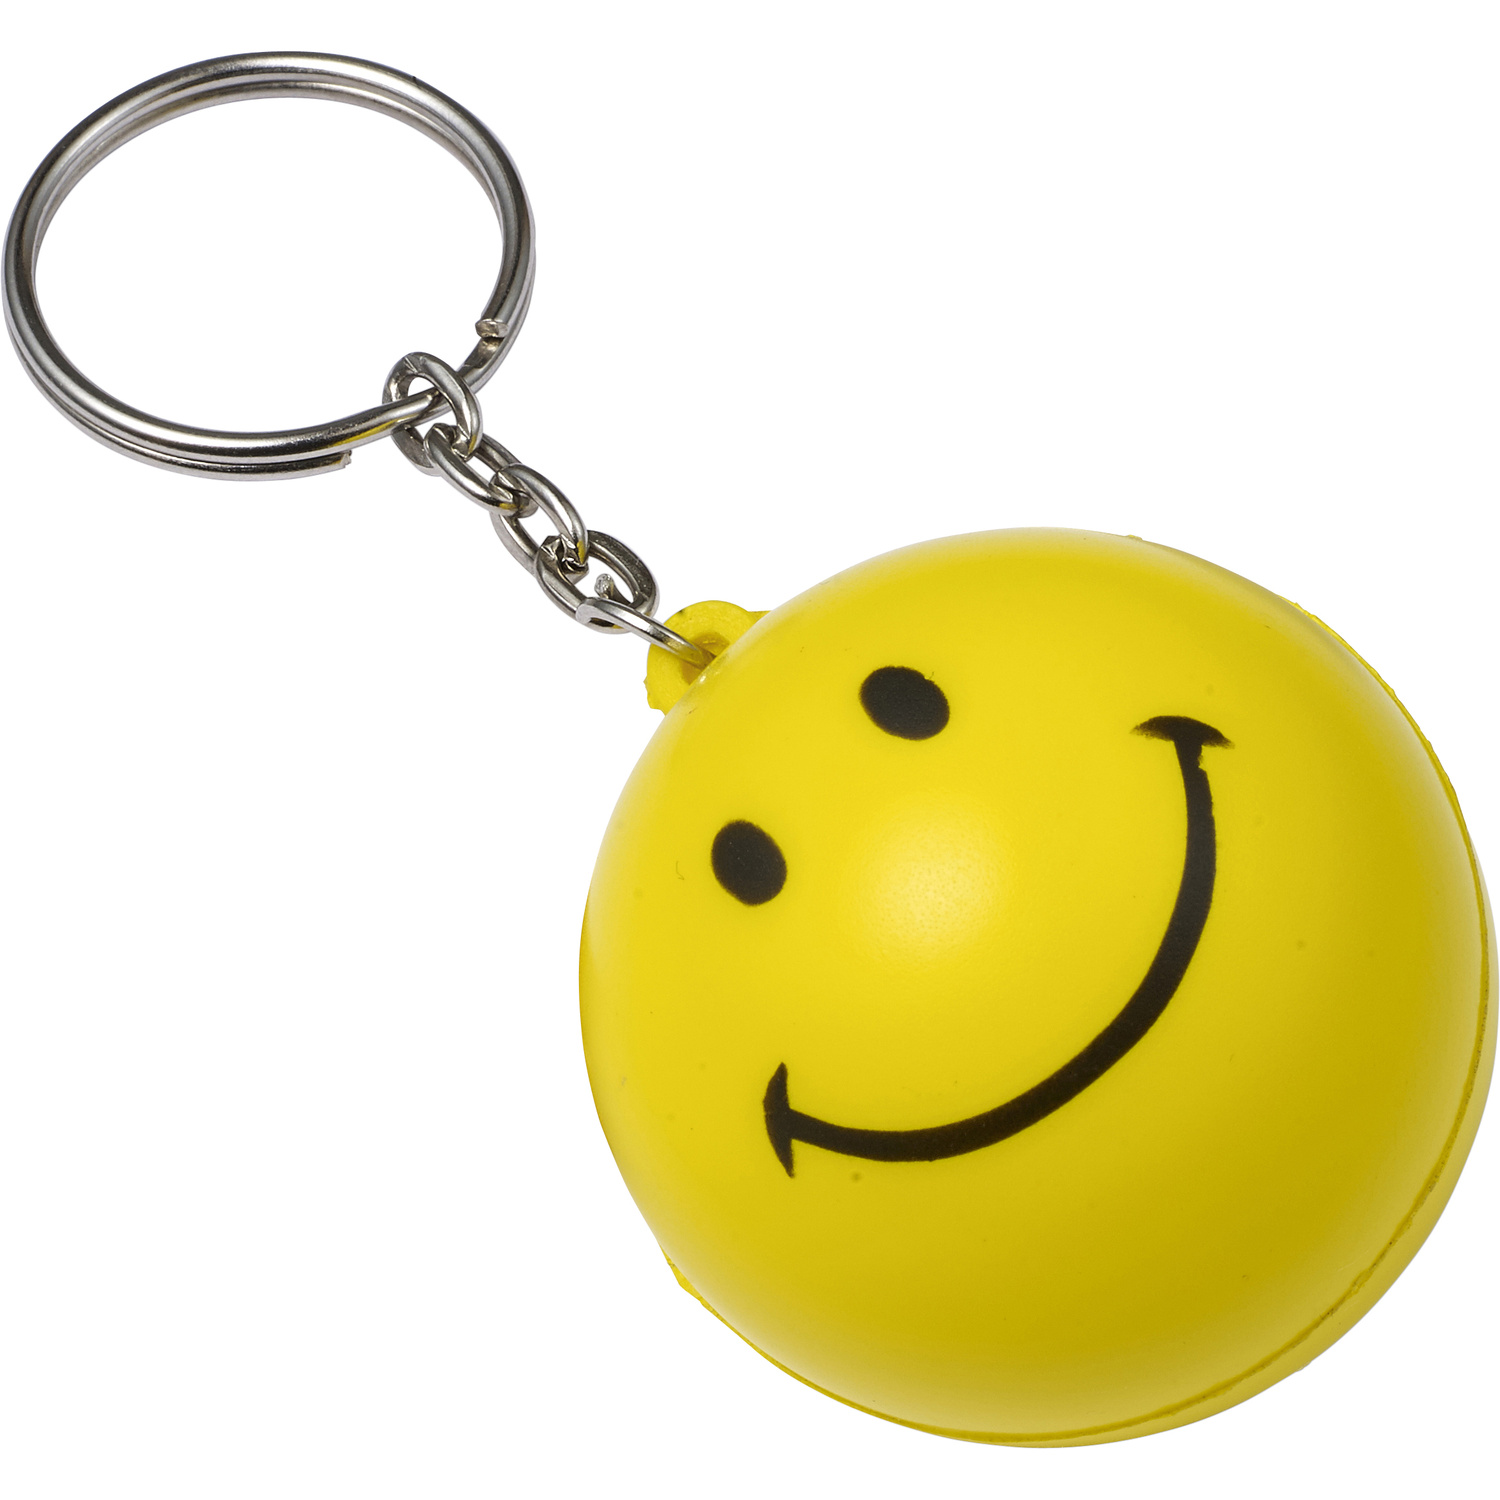 007865 006999999 3d135 frt pro01 fal - Face Stress Toy Key Holder